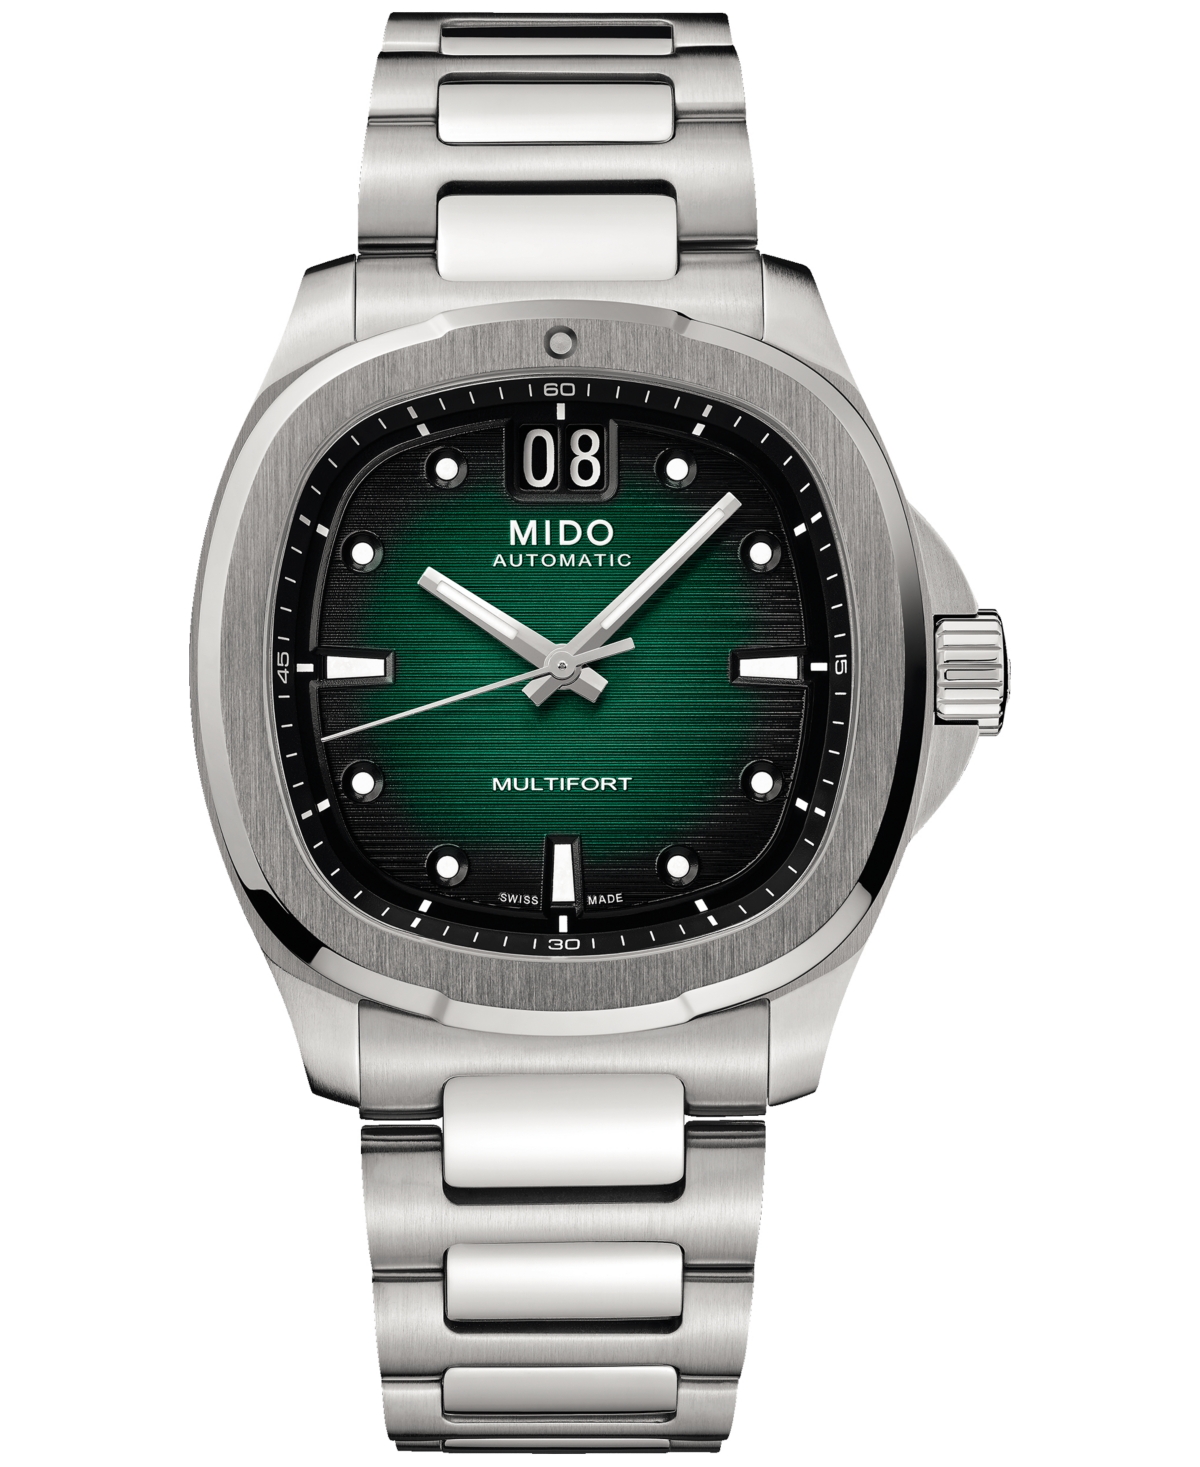 Mido Men's Swiss Automatic Multifort Stainless Steel Bracelet Watch 41mm In Green